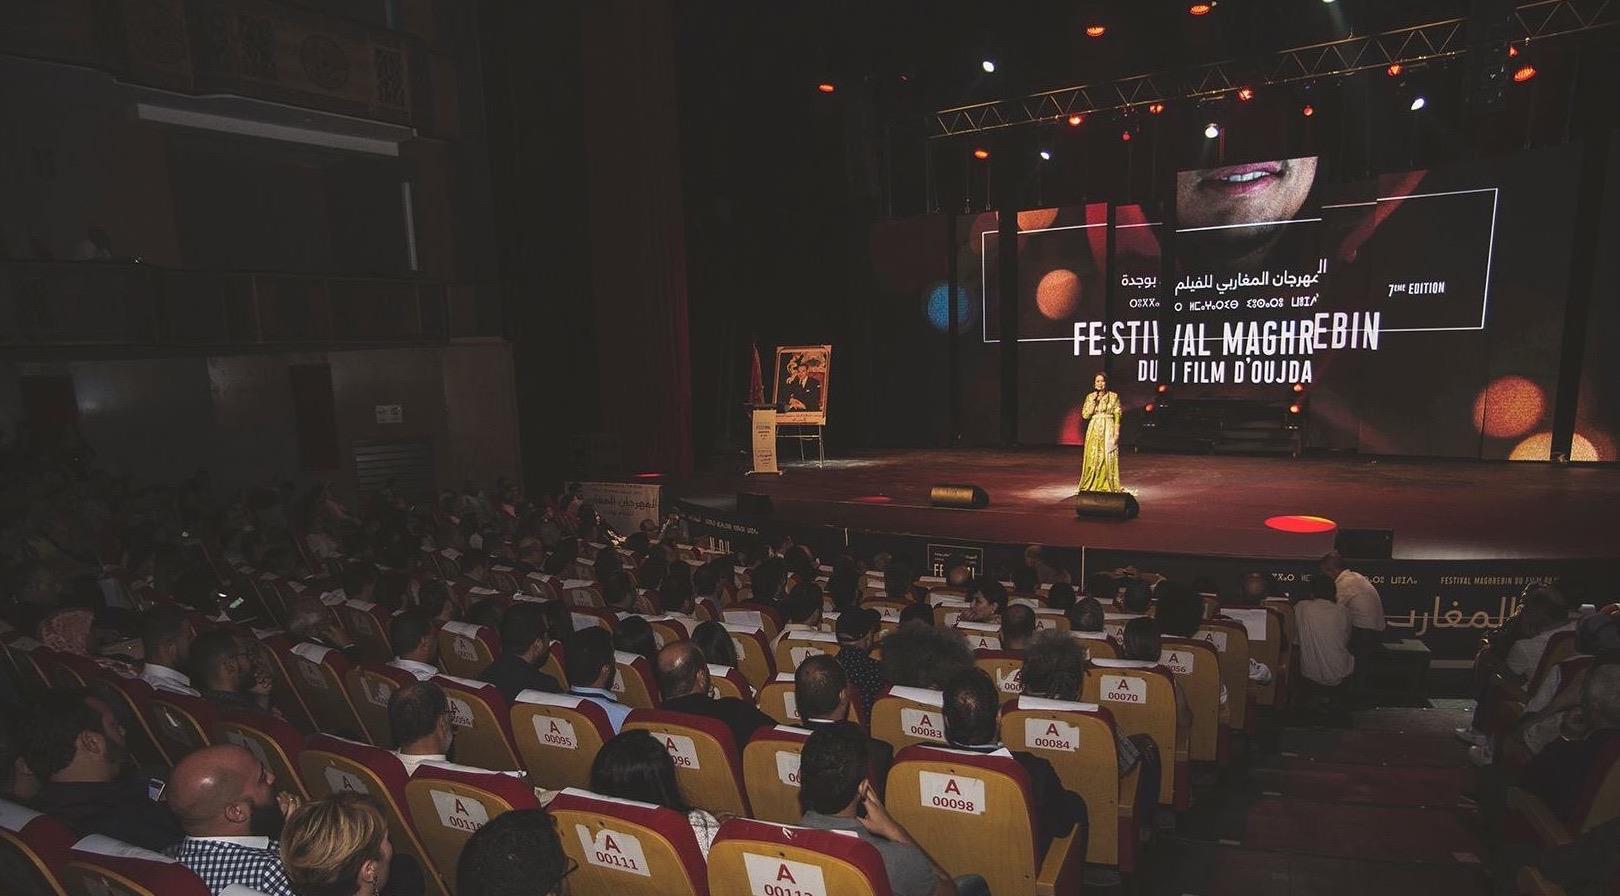 La 10ème édition du Festival maghrébin du film d'Oujda, du 19 au 23 novembre